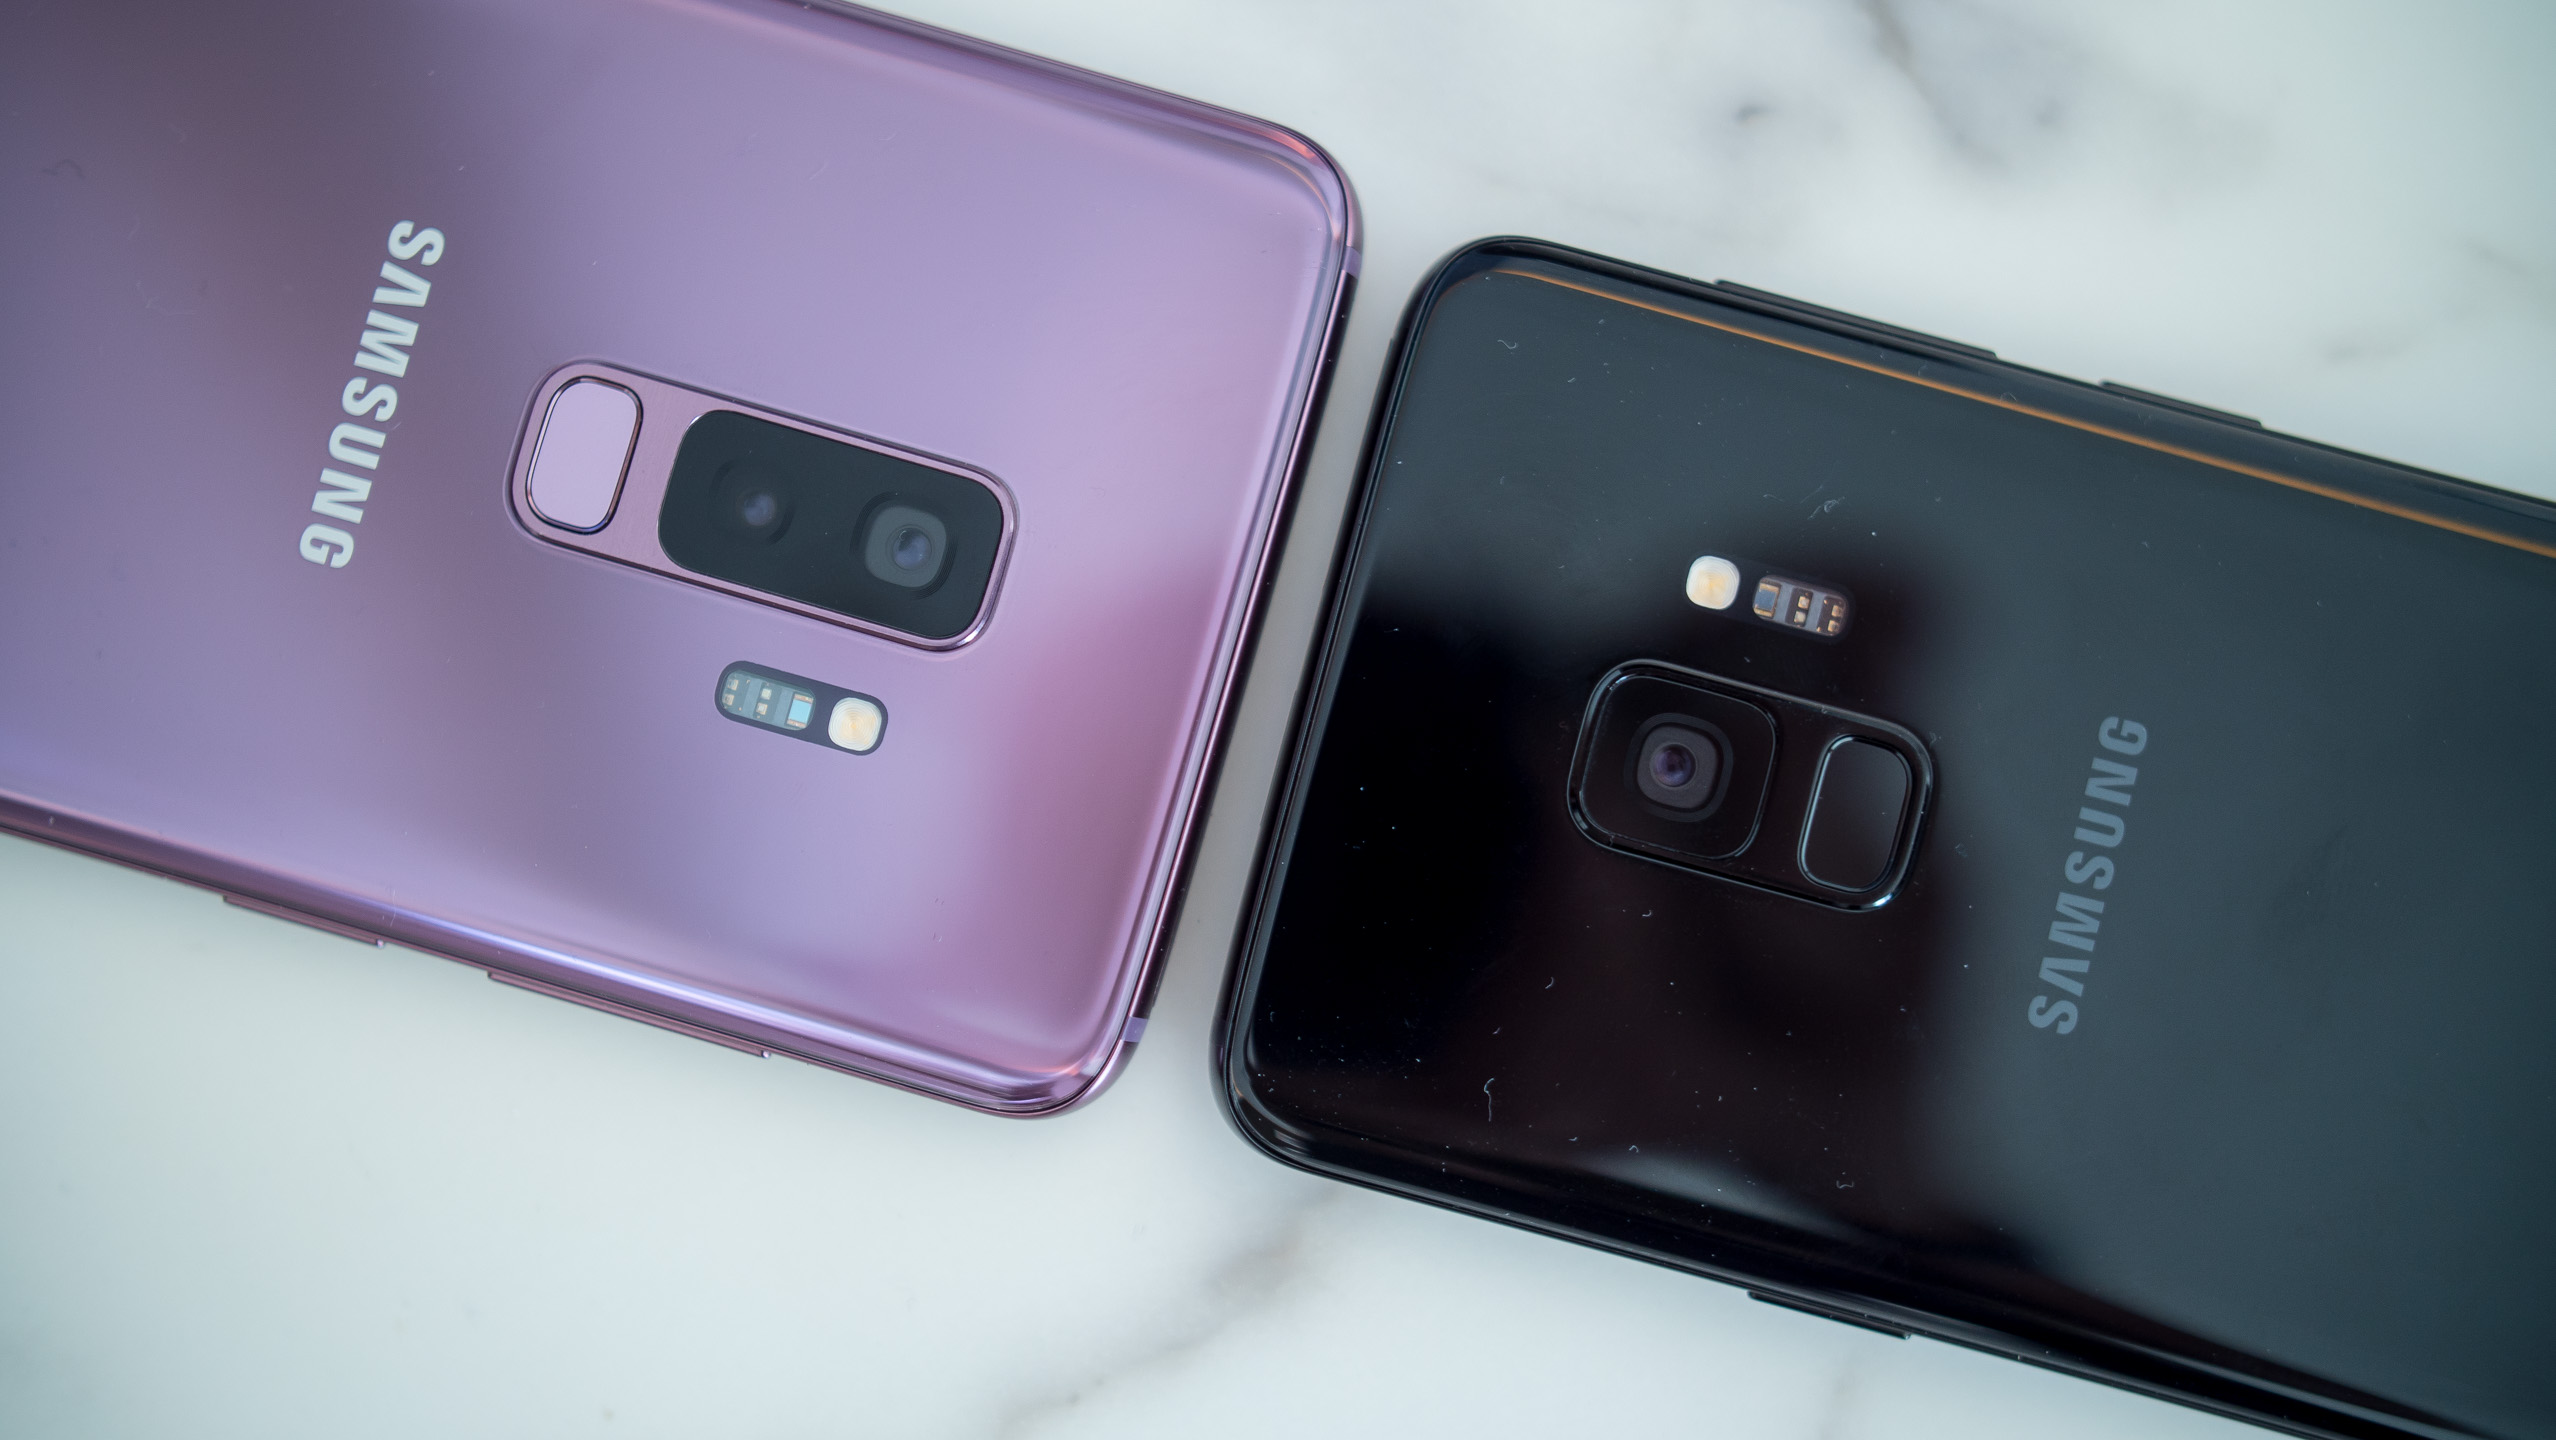 Galaxy S9 vs Galaxy S8